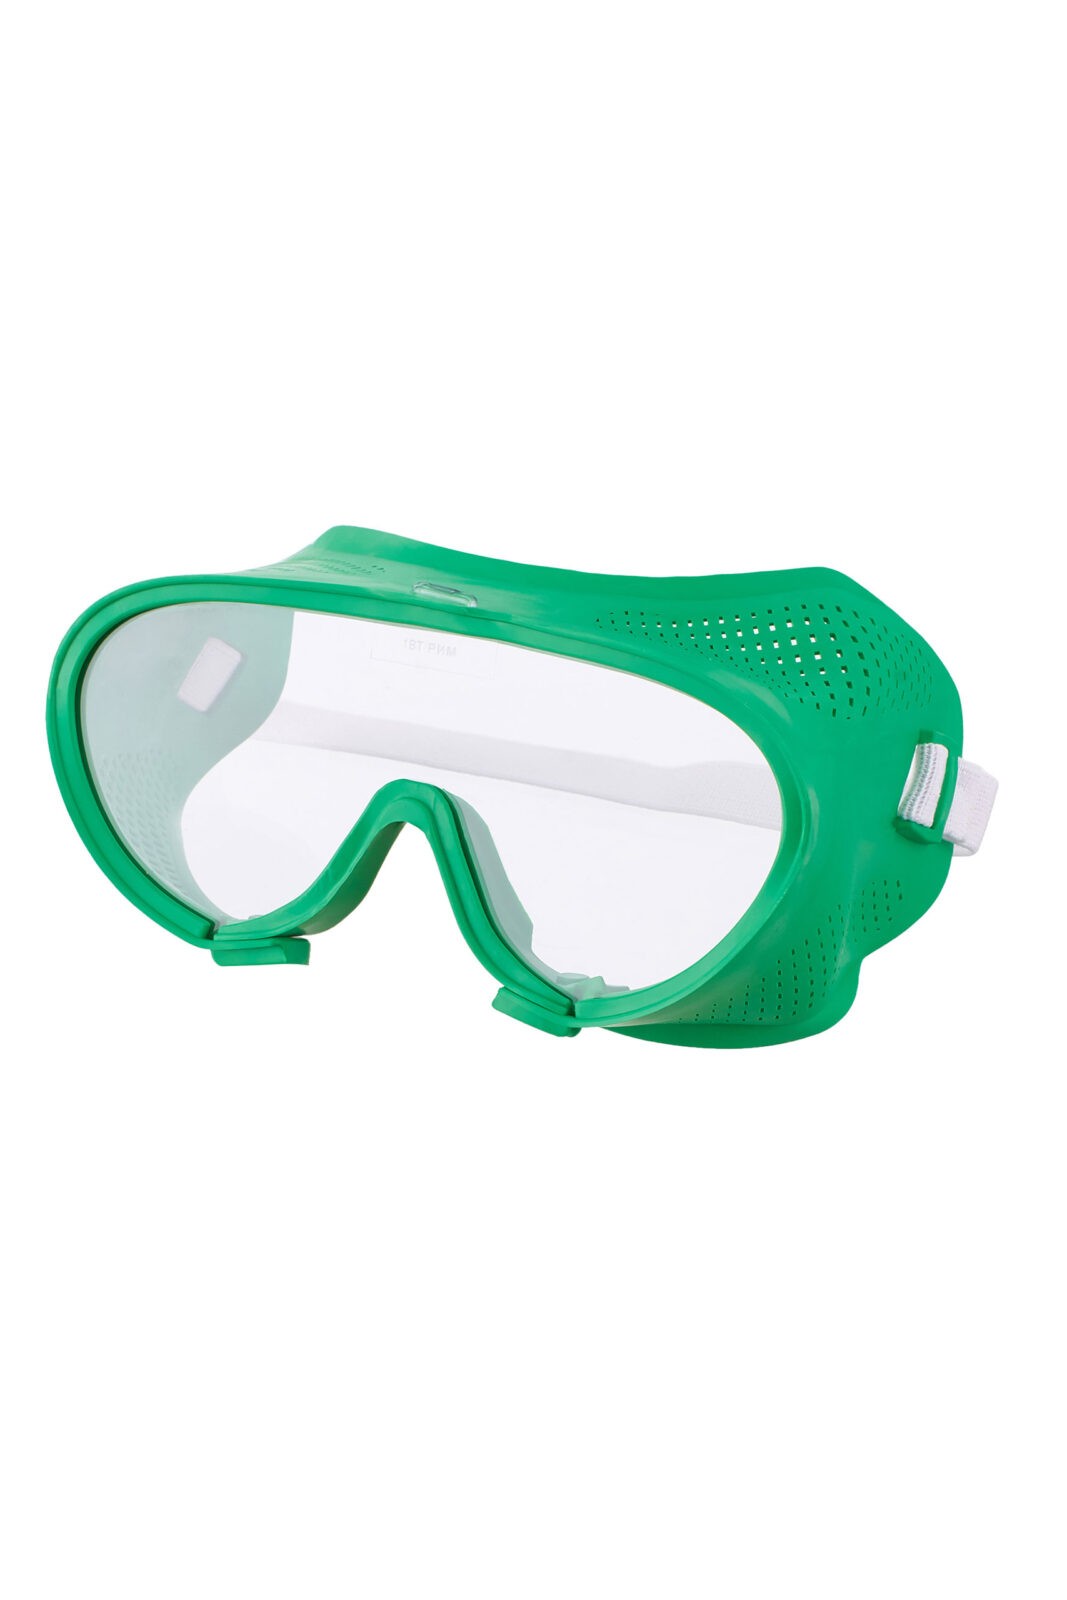 Защитные очки с прямой вентиляцией “Стандарт”